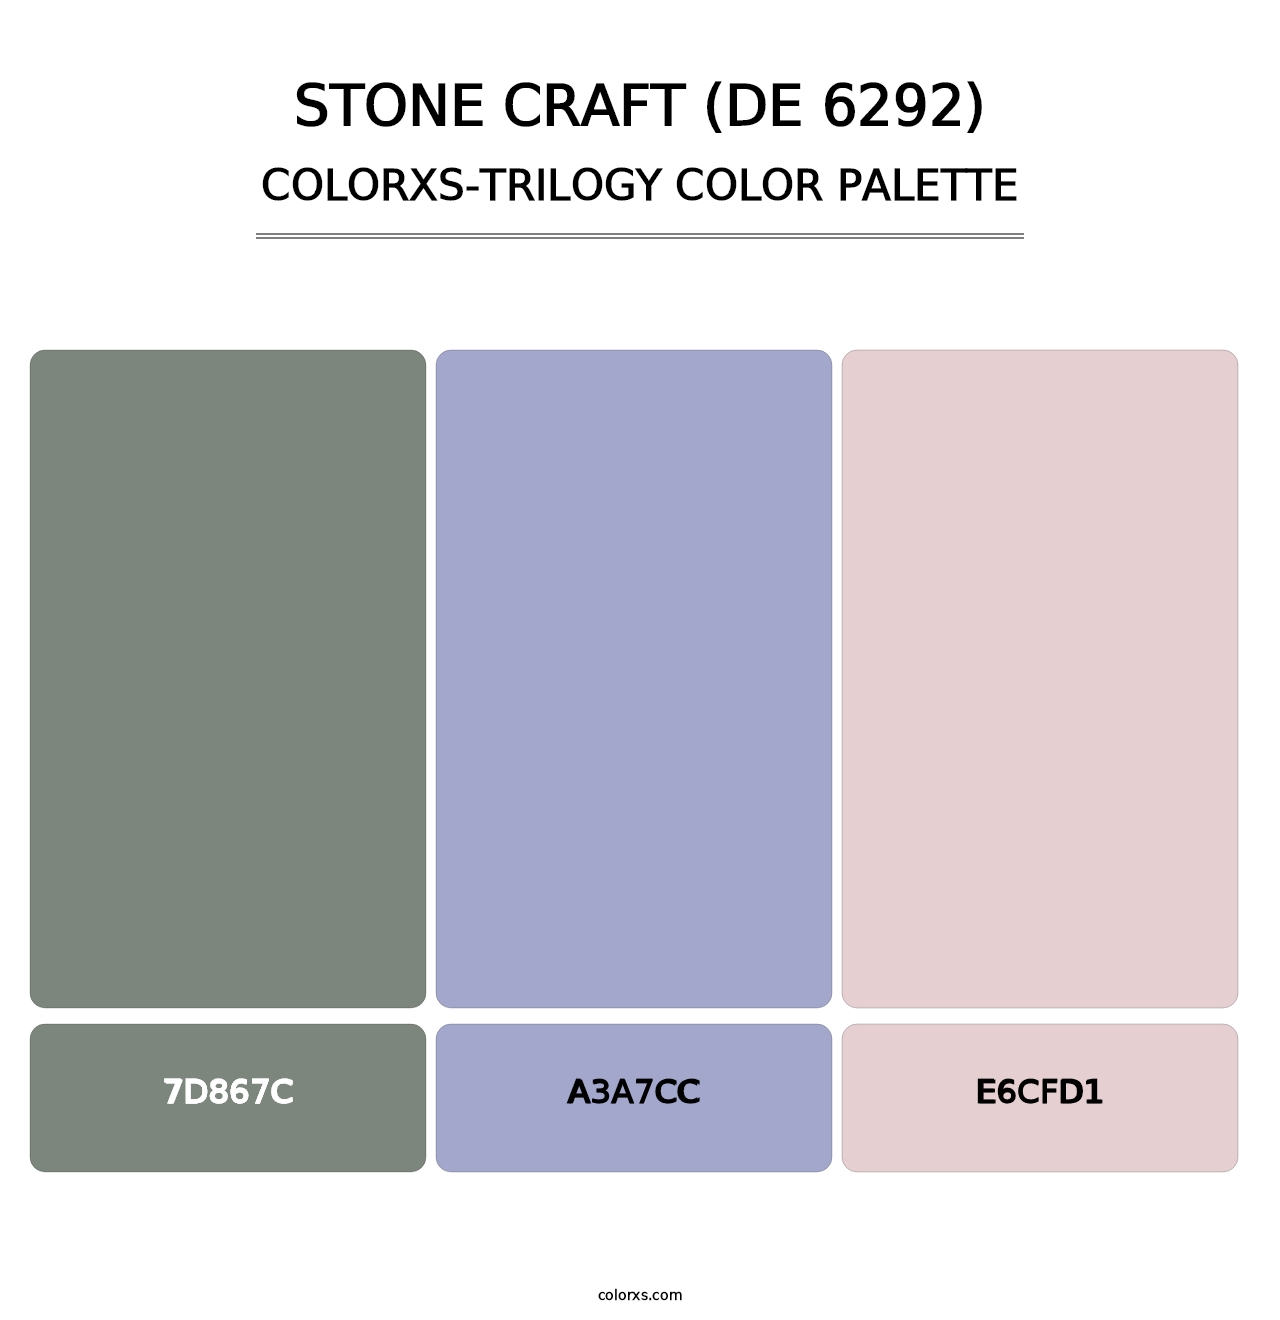 Stone Craft (DE 6292) - Colorxs Trilogy Palette